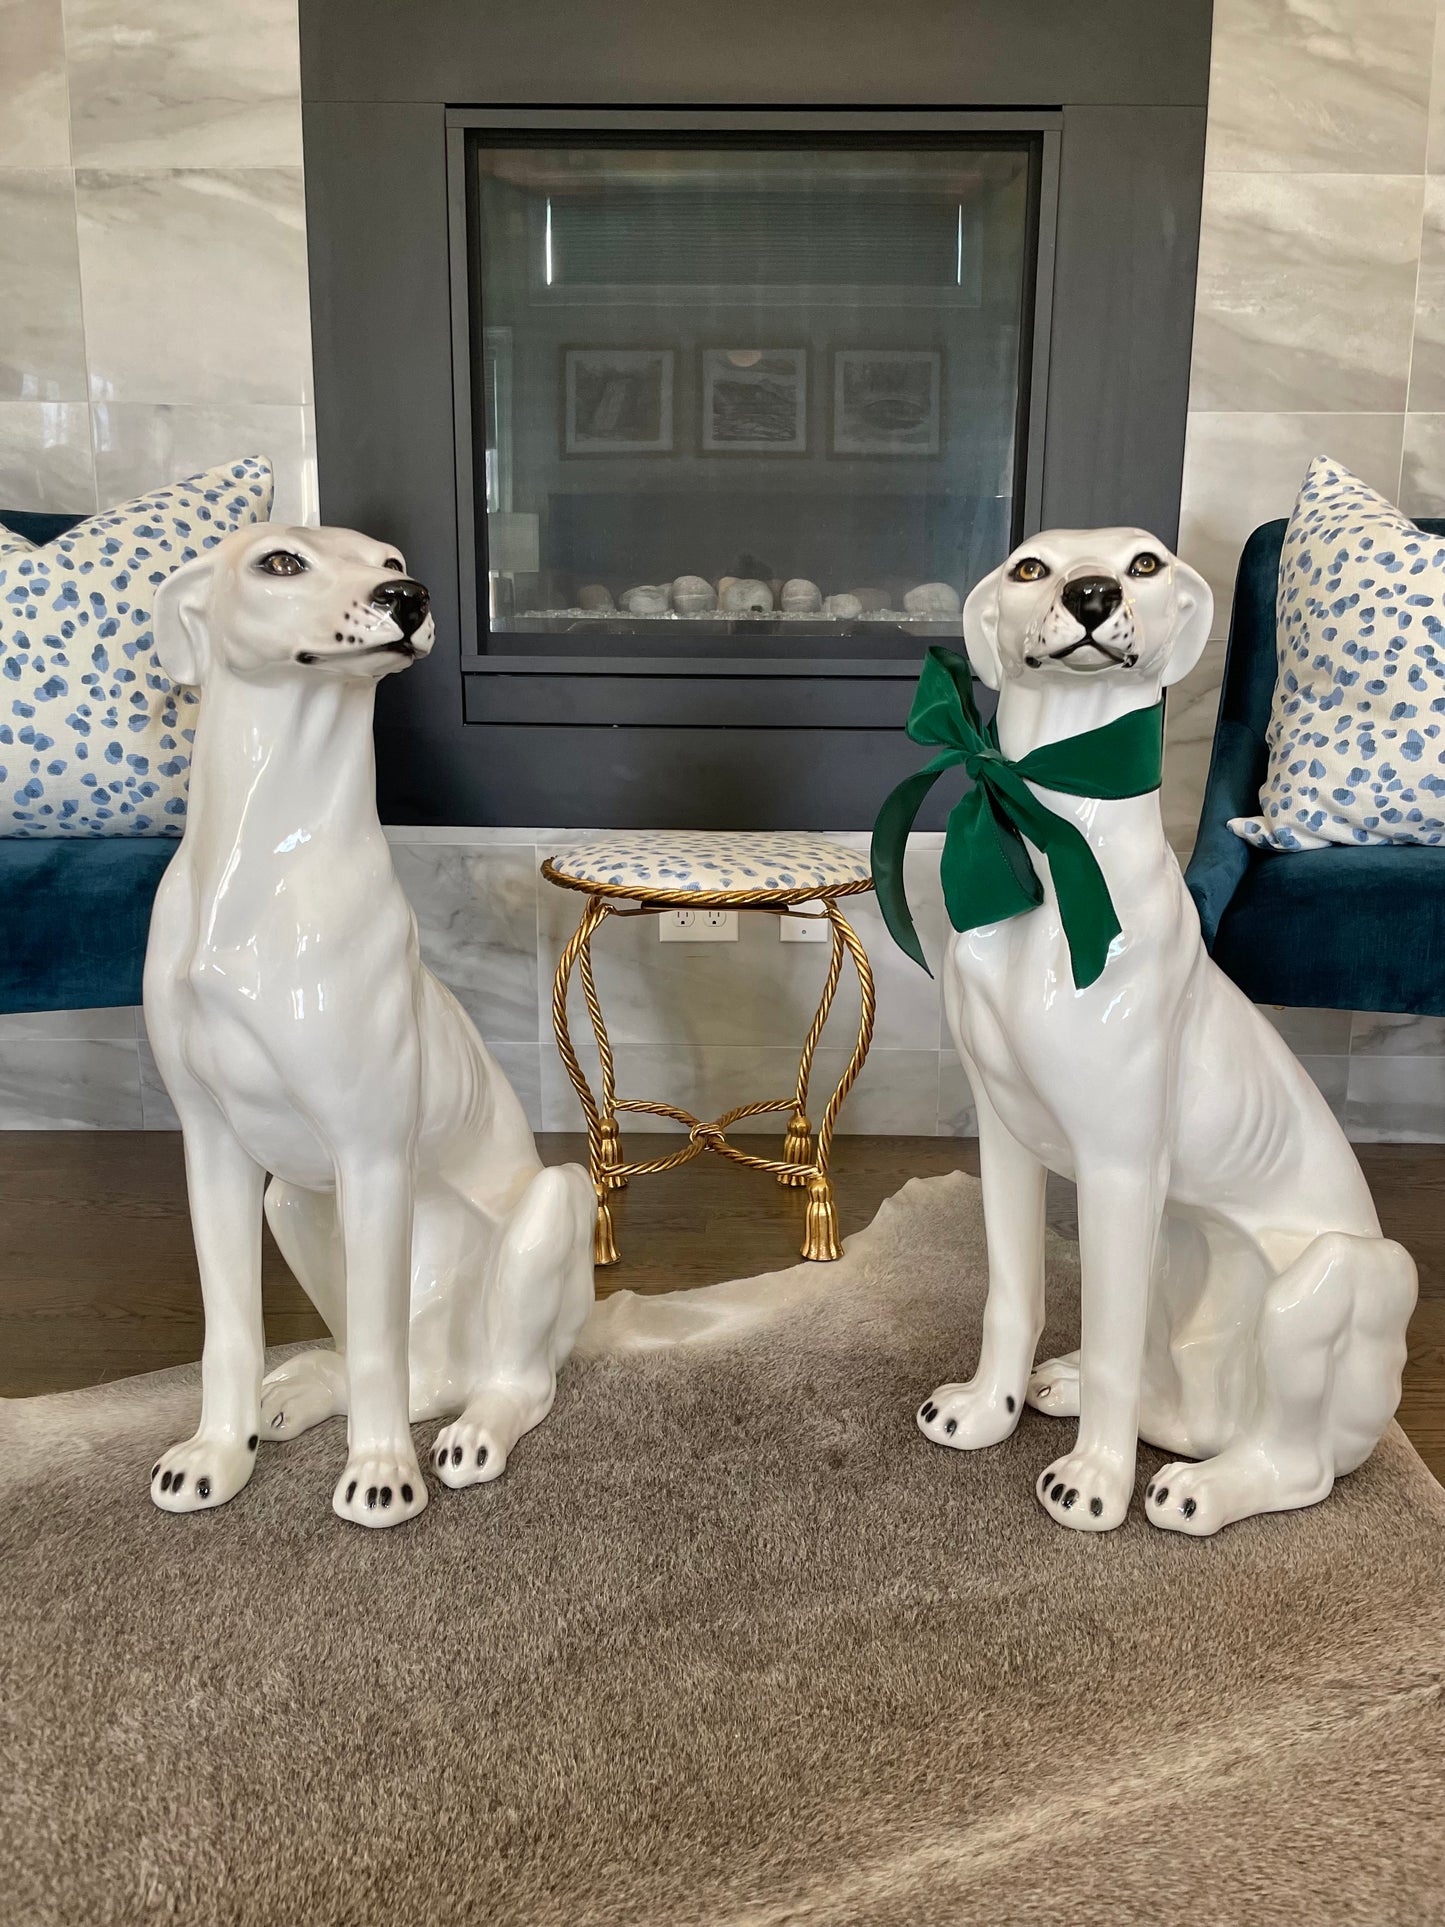 Exquisite New Pair of 30”Italian Ceramic Greyhounds - Pristine!